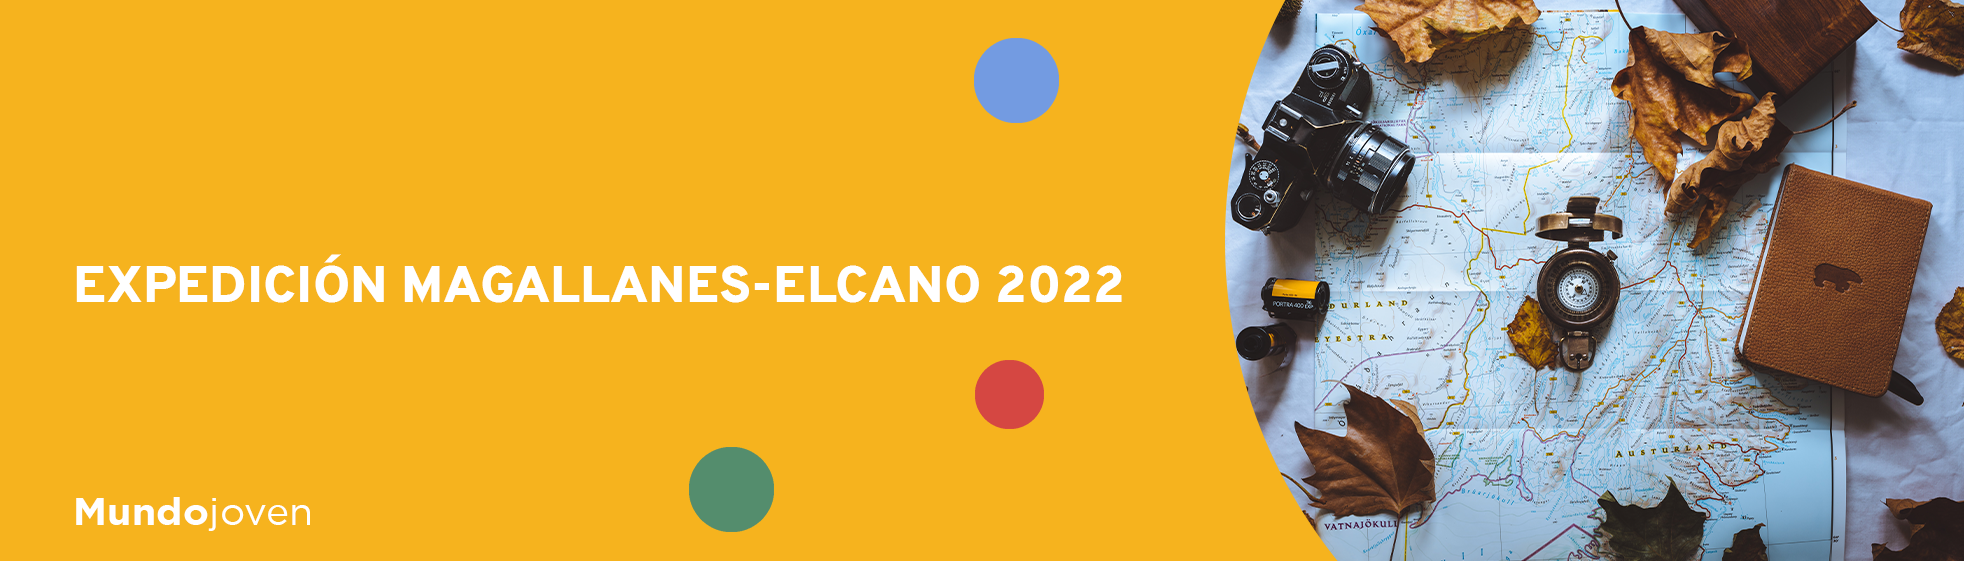 Expedición Magallanes-Elcano 2022